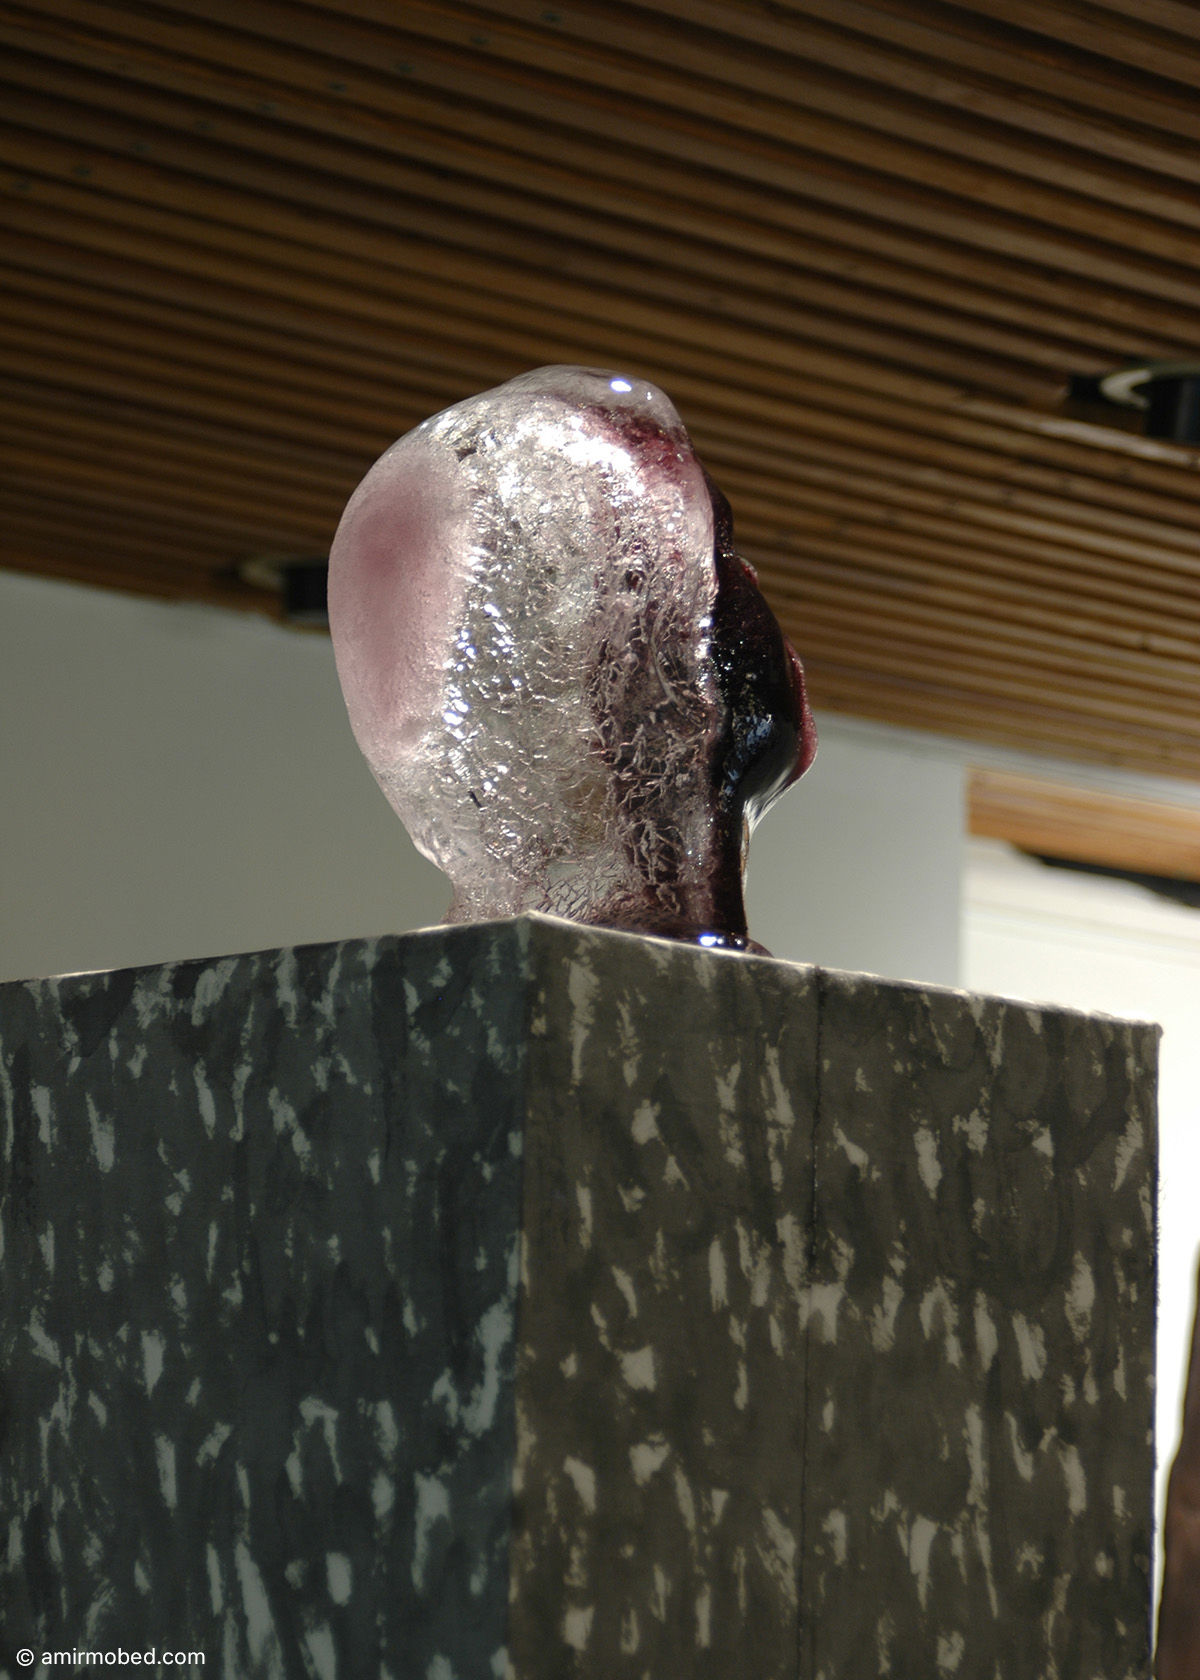 خودنگاره، ۱۳۸۶، چیدمان، پایه با روکش پارچه، جوهر رنگ در قالب یخ